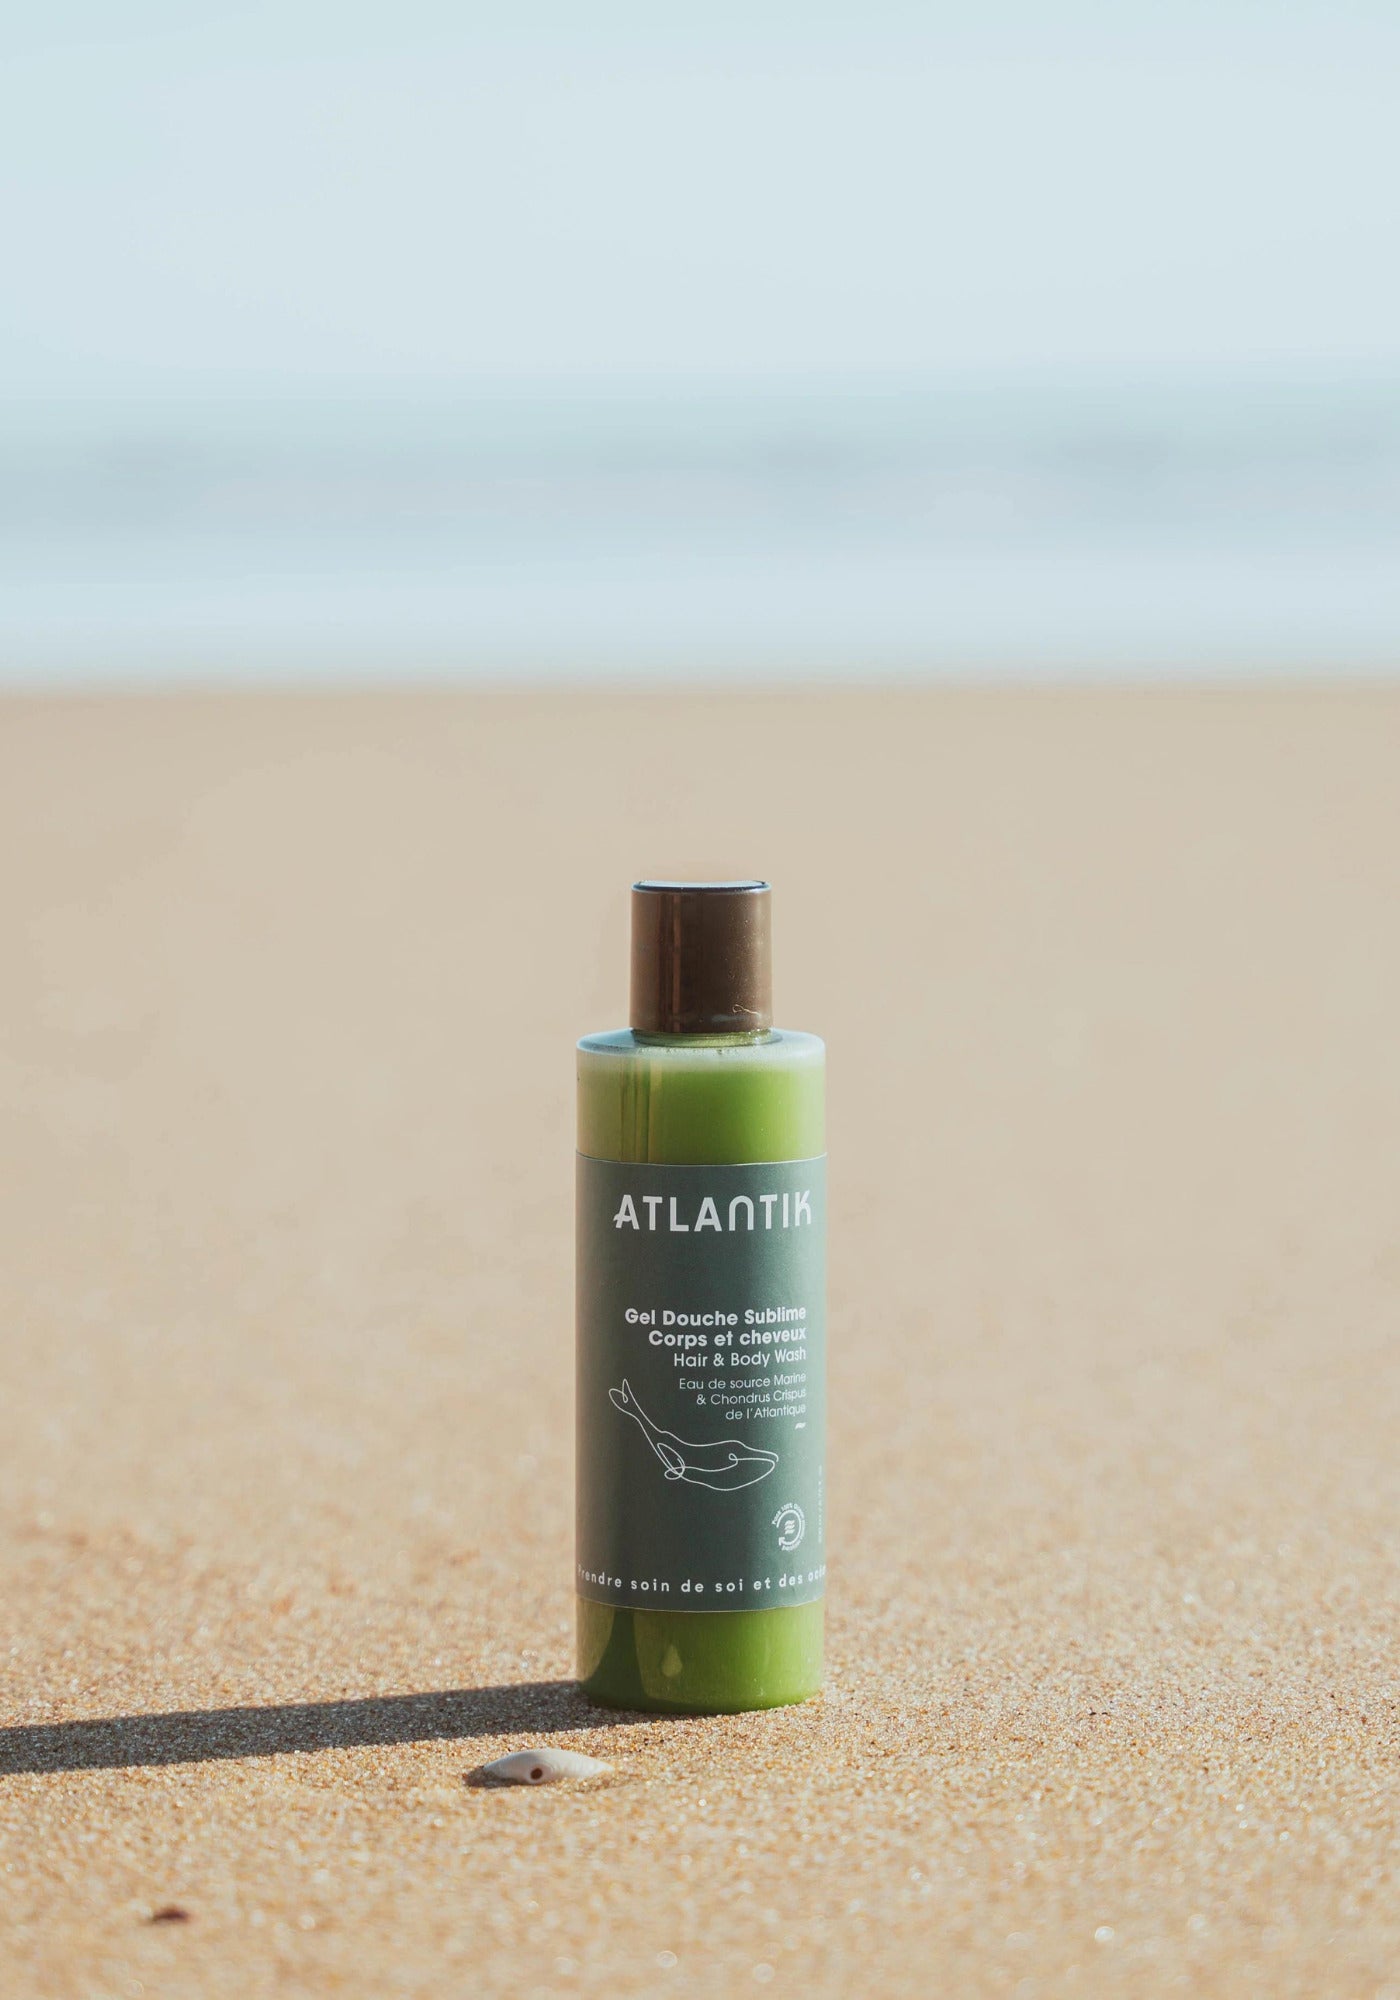 Le gel douche corps et cheveux sublime de chez Atlantik Care posé sur une plage